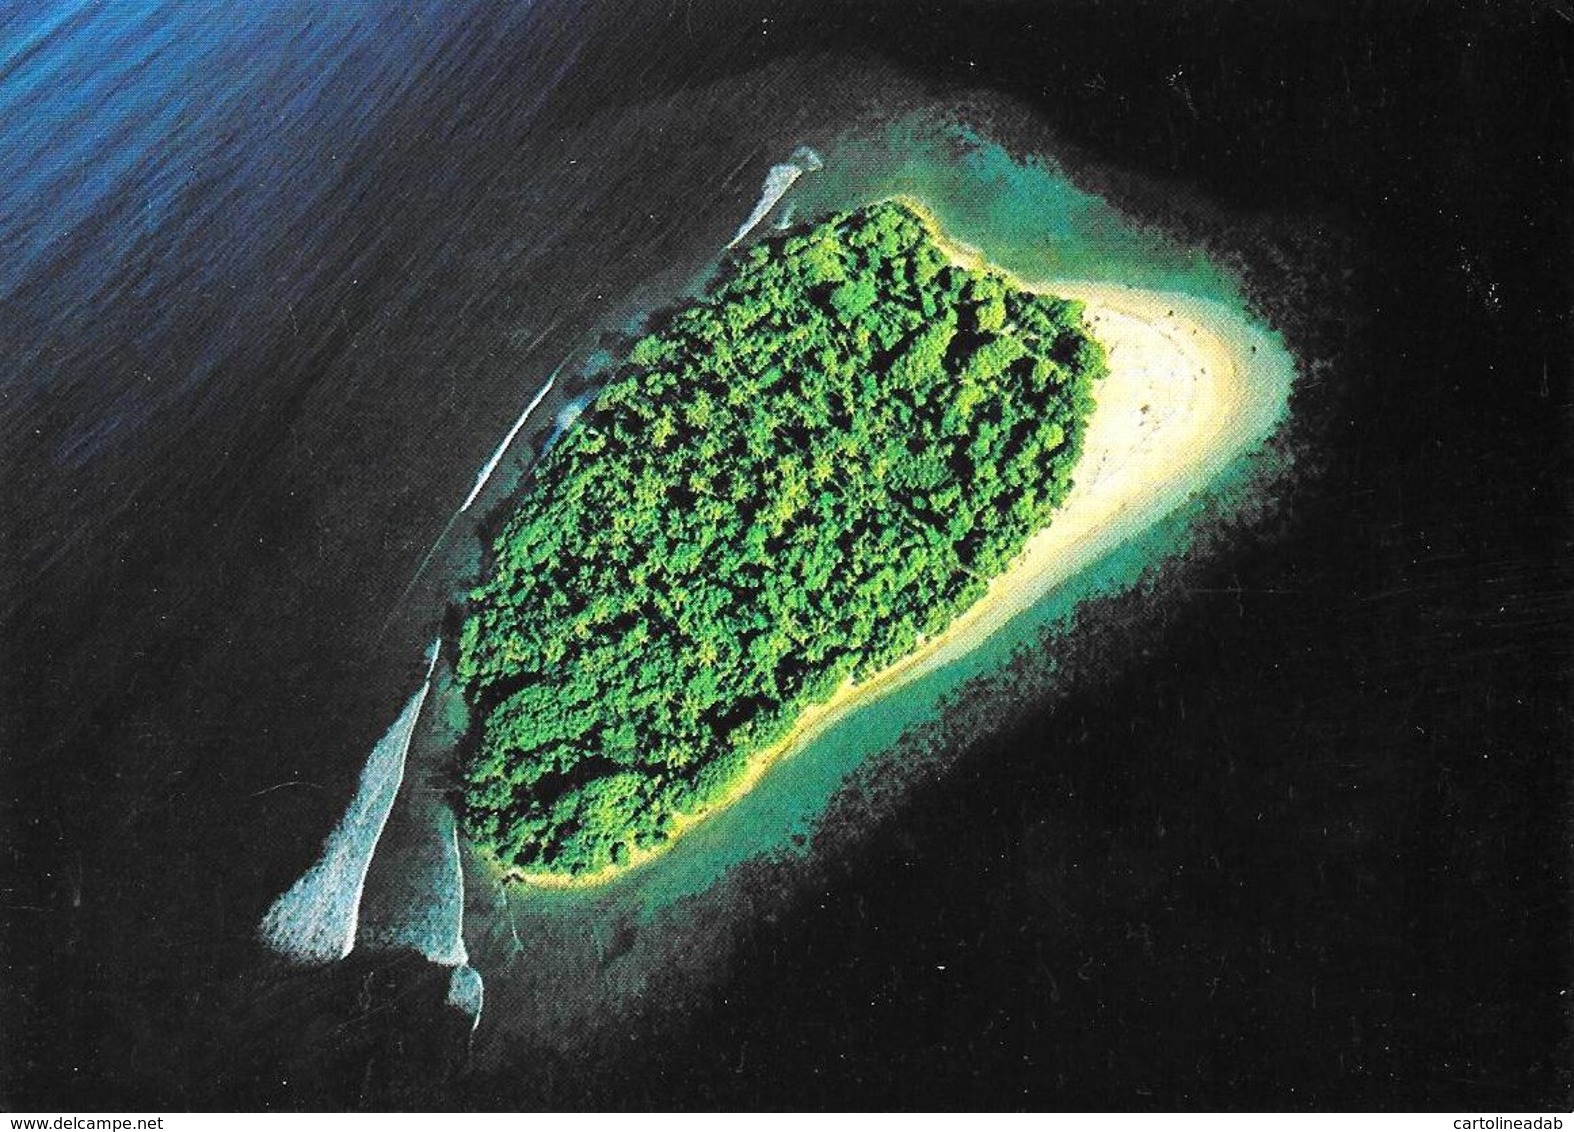 [MD3005] CPM - MALDIVE - UNIHABITED ISLAND - ART EDITION - BY ERIC KLEMM - Non Viaggiata - Maldive